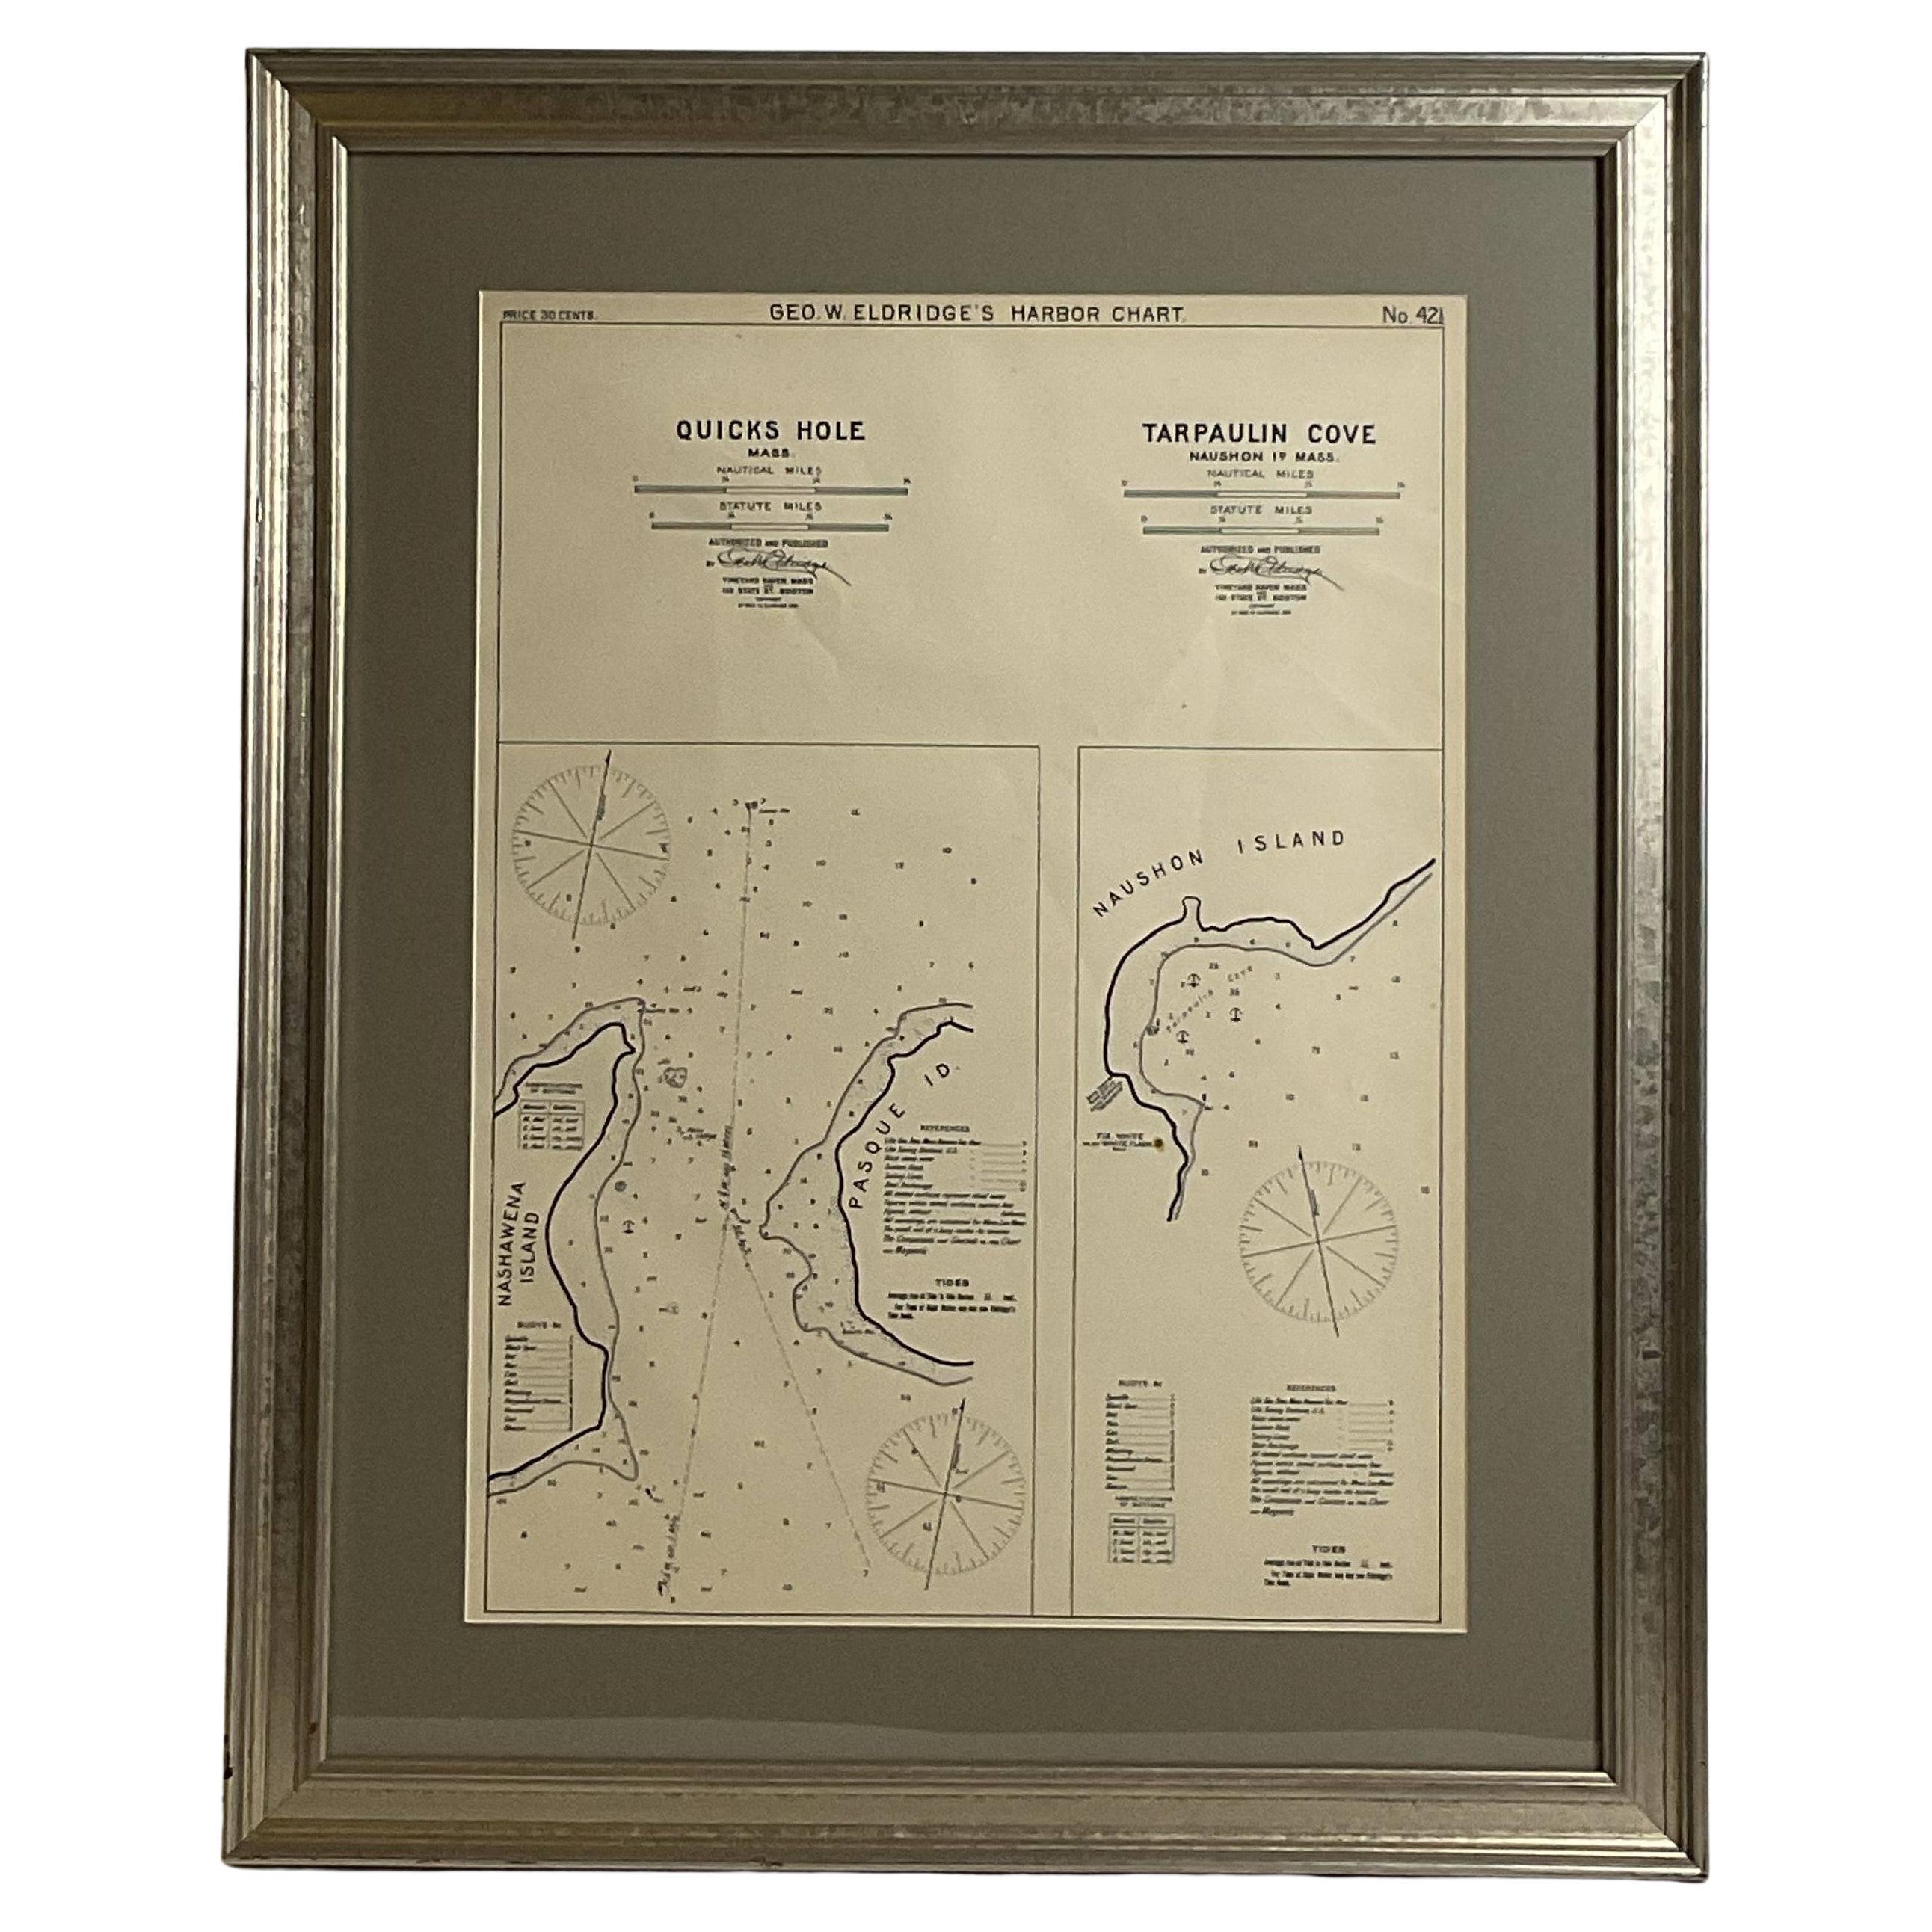 Mariners-Karte der Quicks Hole und Tarpaulin Cove von George Eldridge 1901